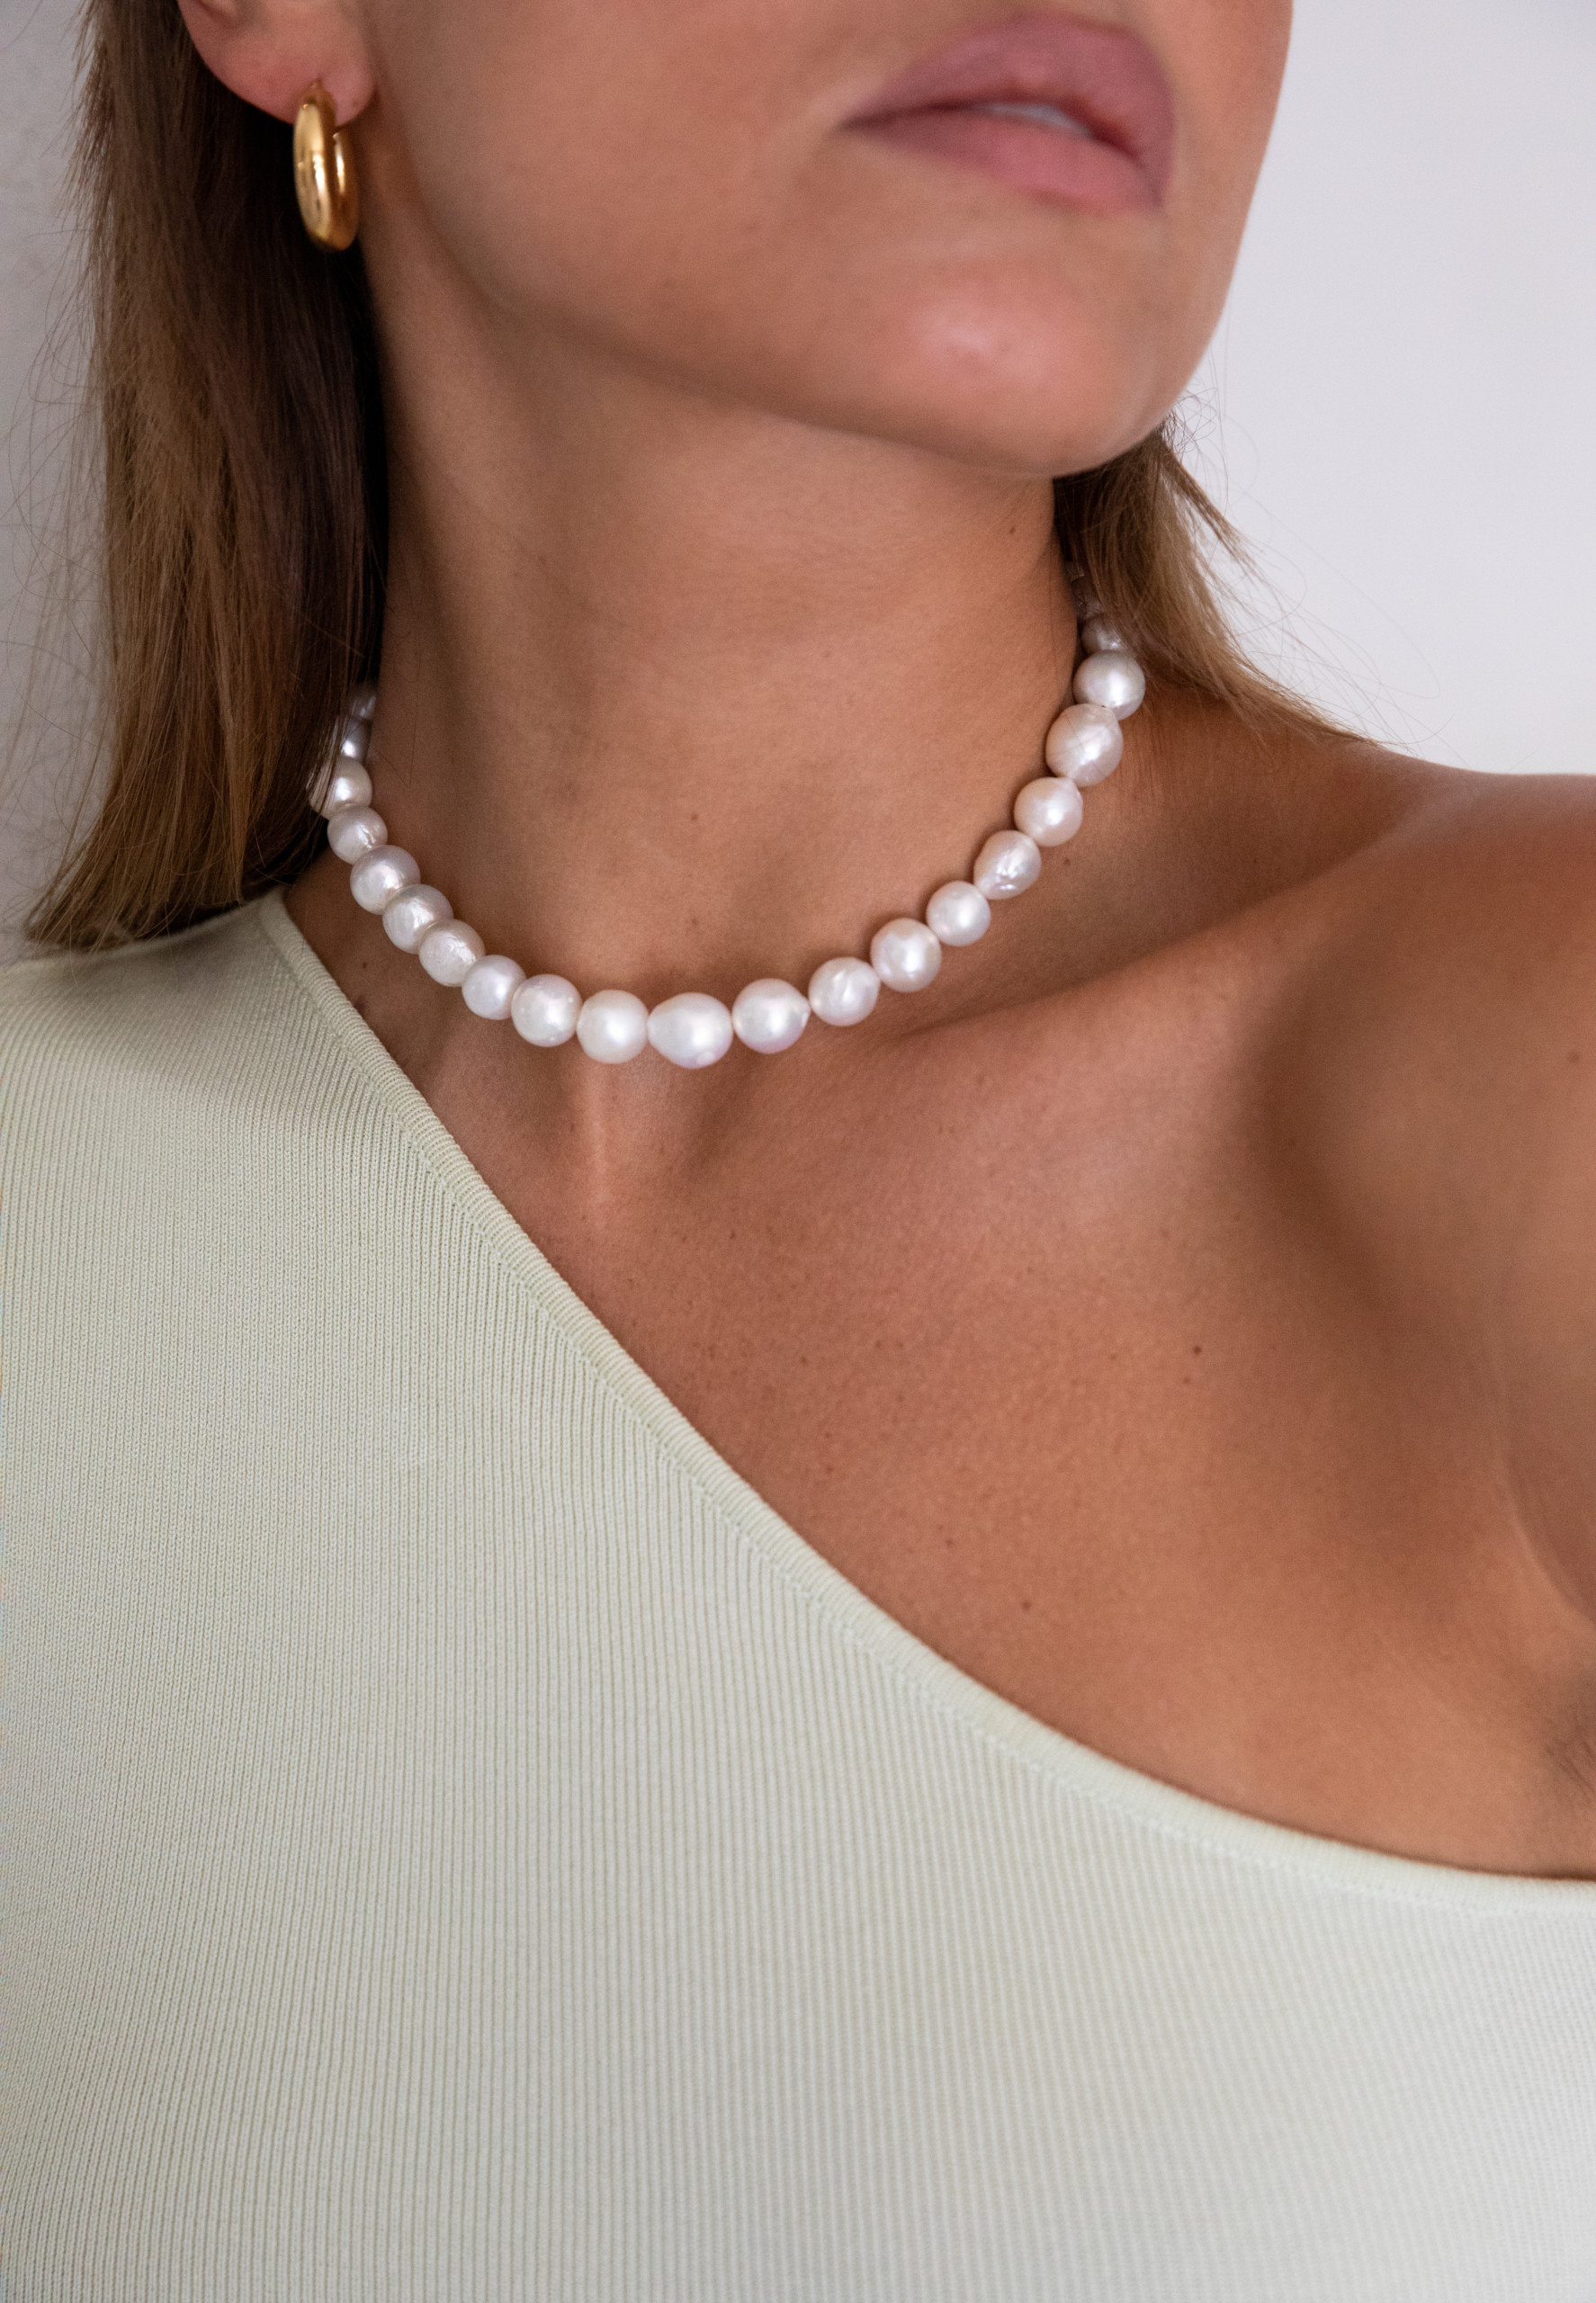 Cocco baroque pearls necklace